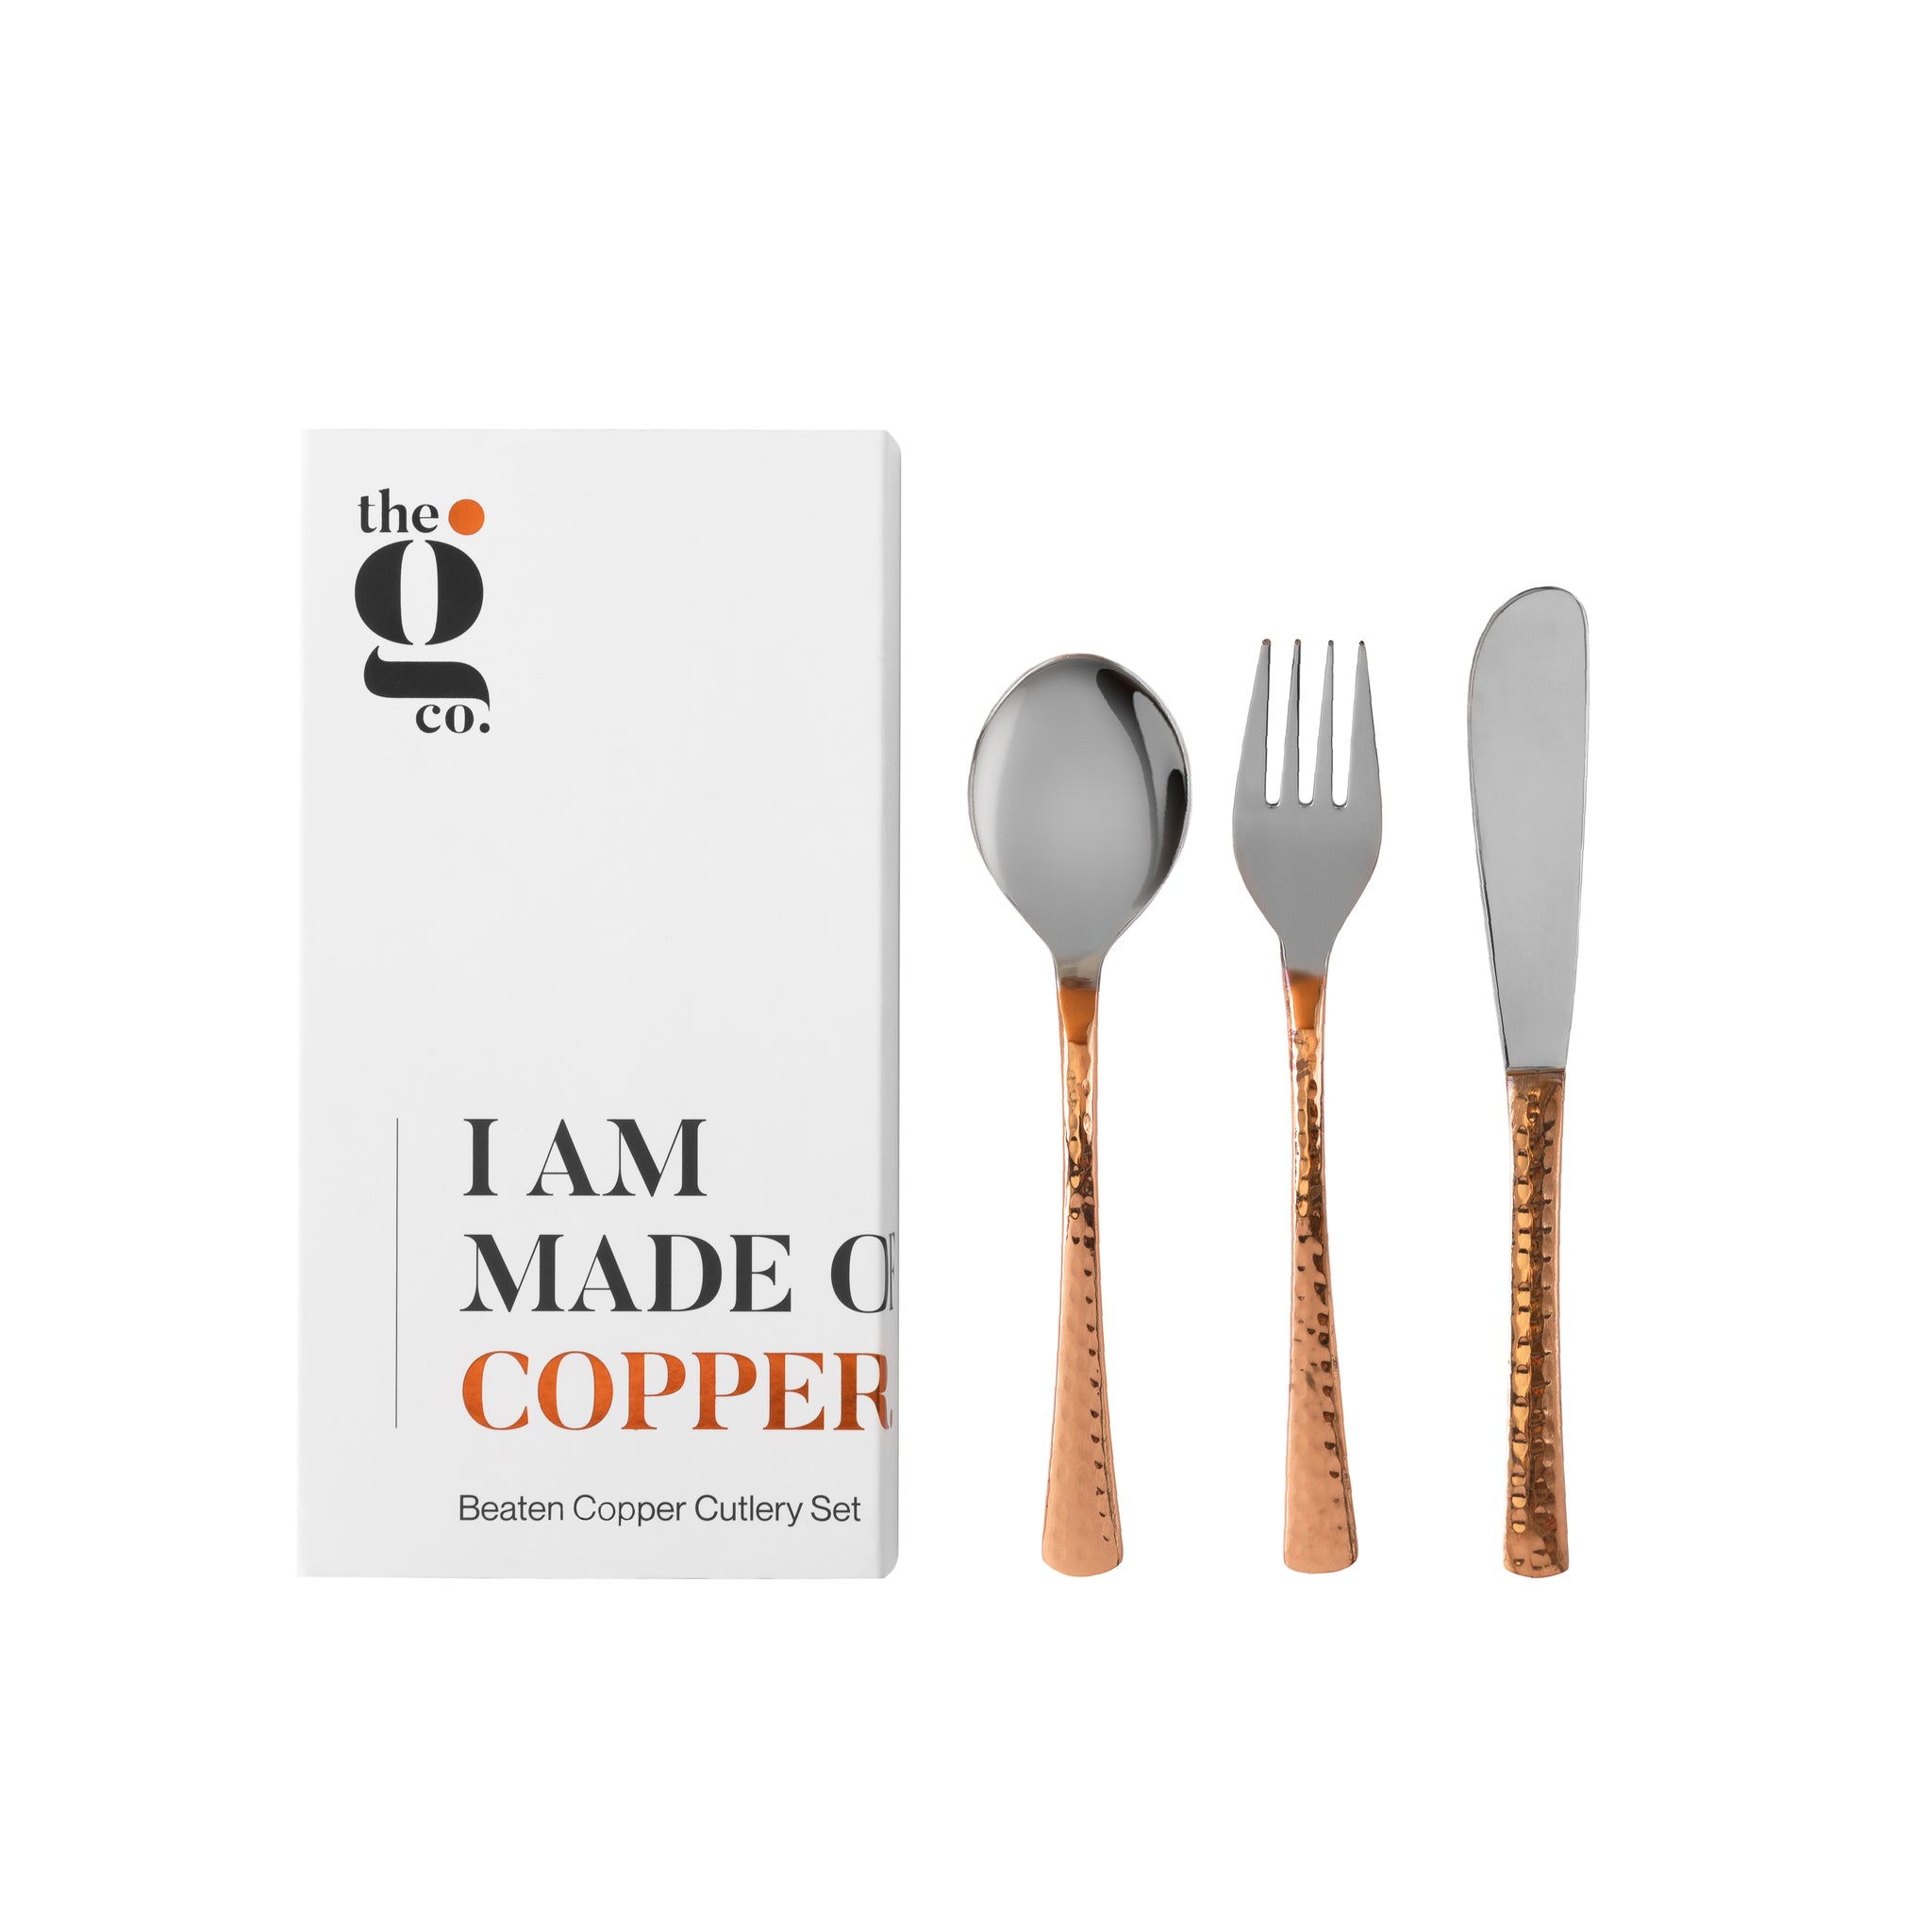 Beaten Copper Cutlery Set - Knife, Fork & Spoon